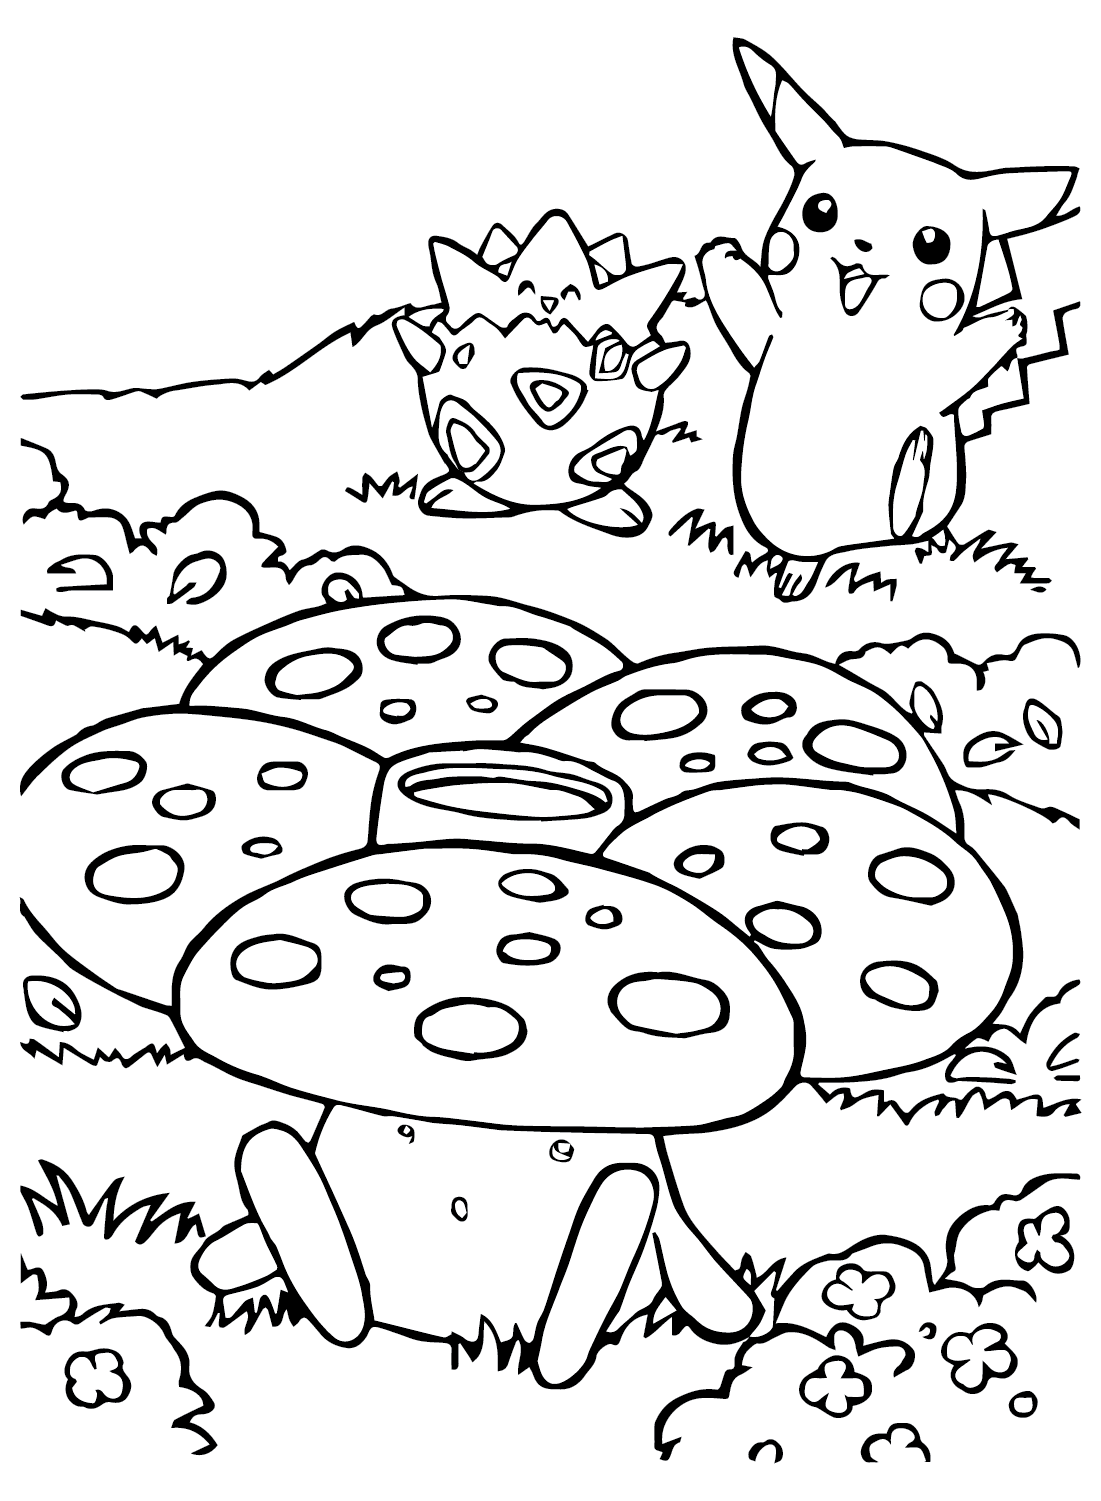 Página para colorear de Vileplume, Pikechu y Togepi de Pikachu